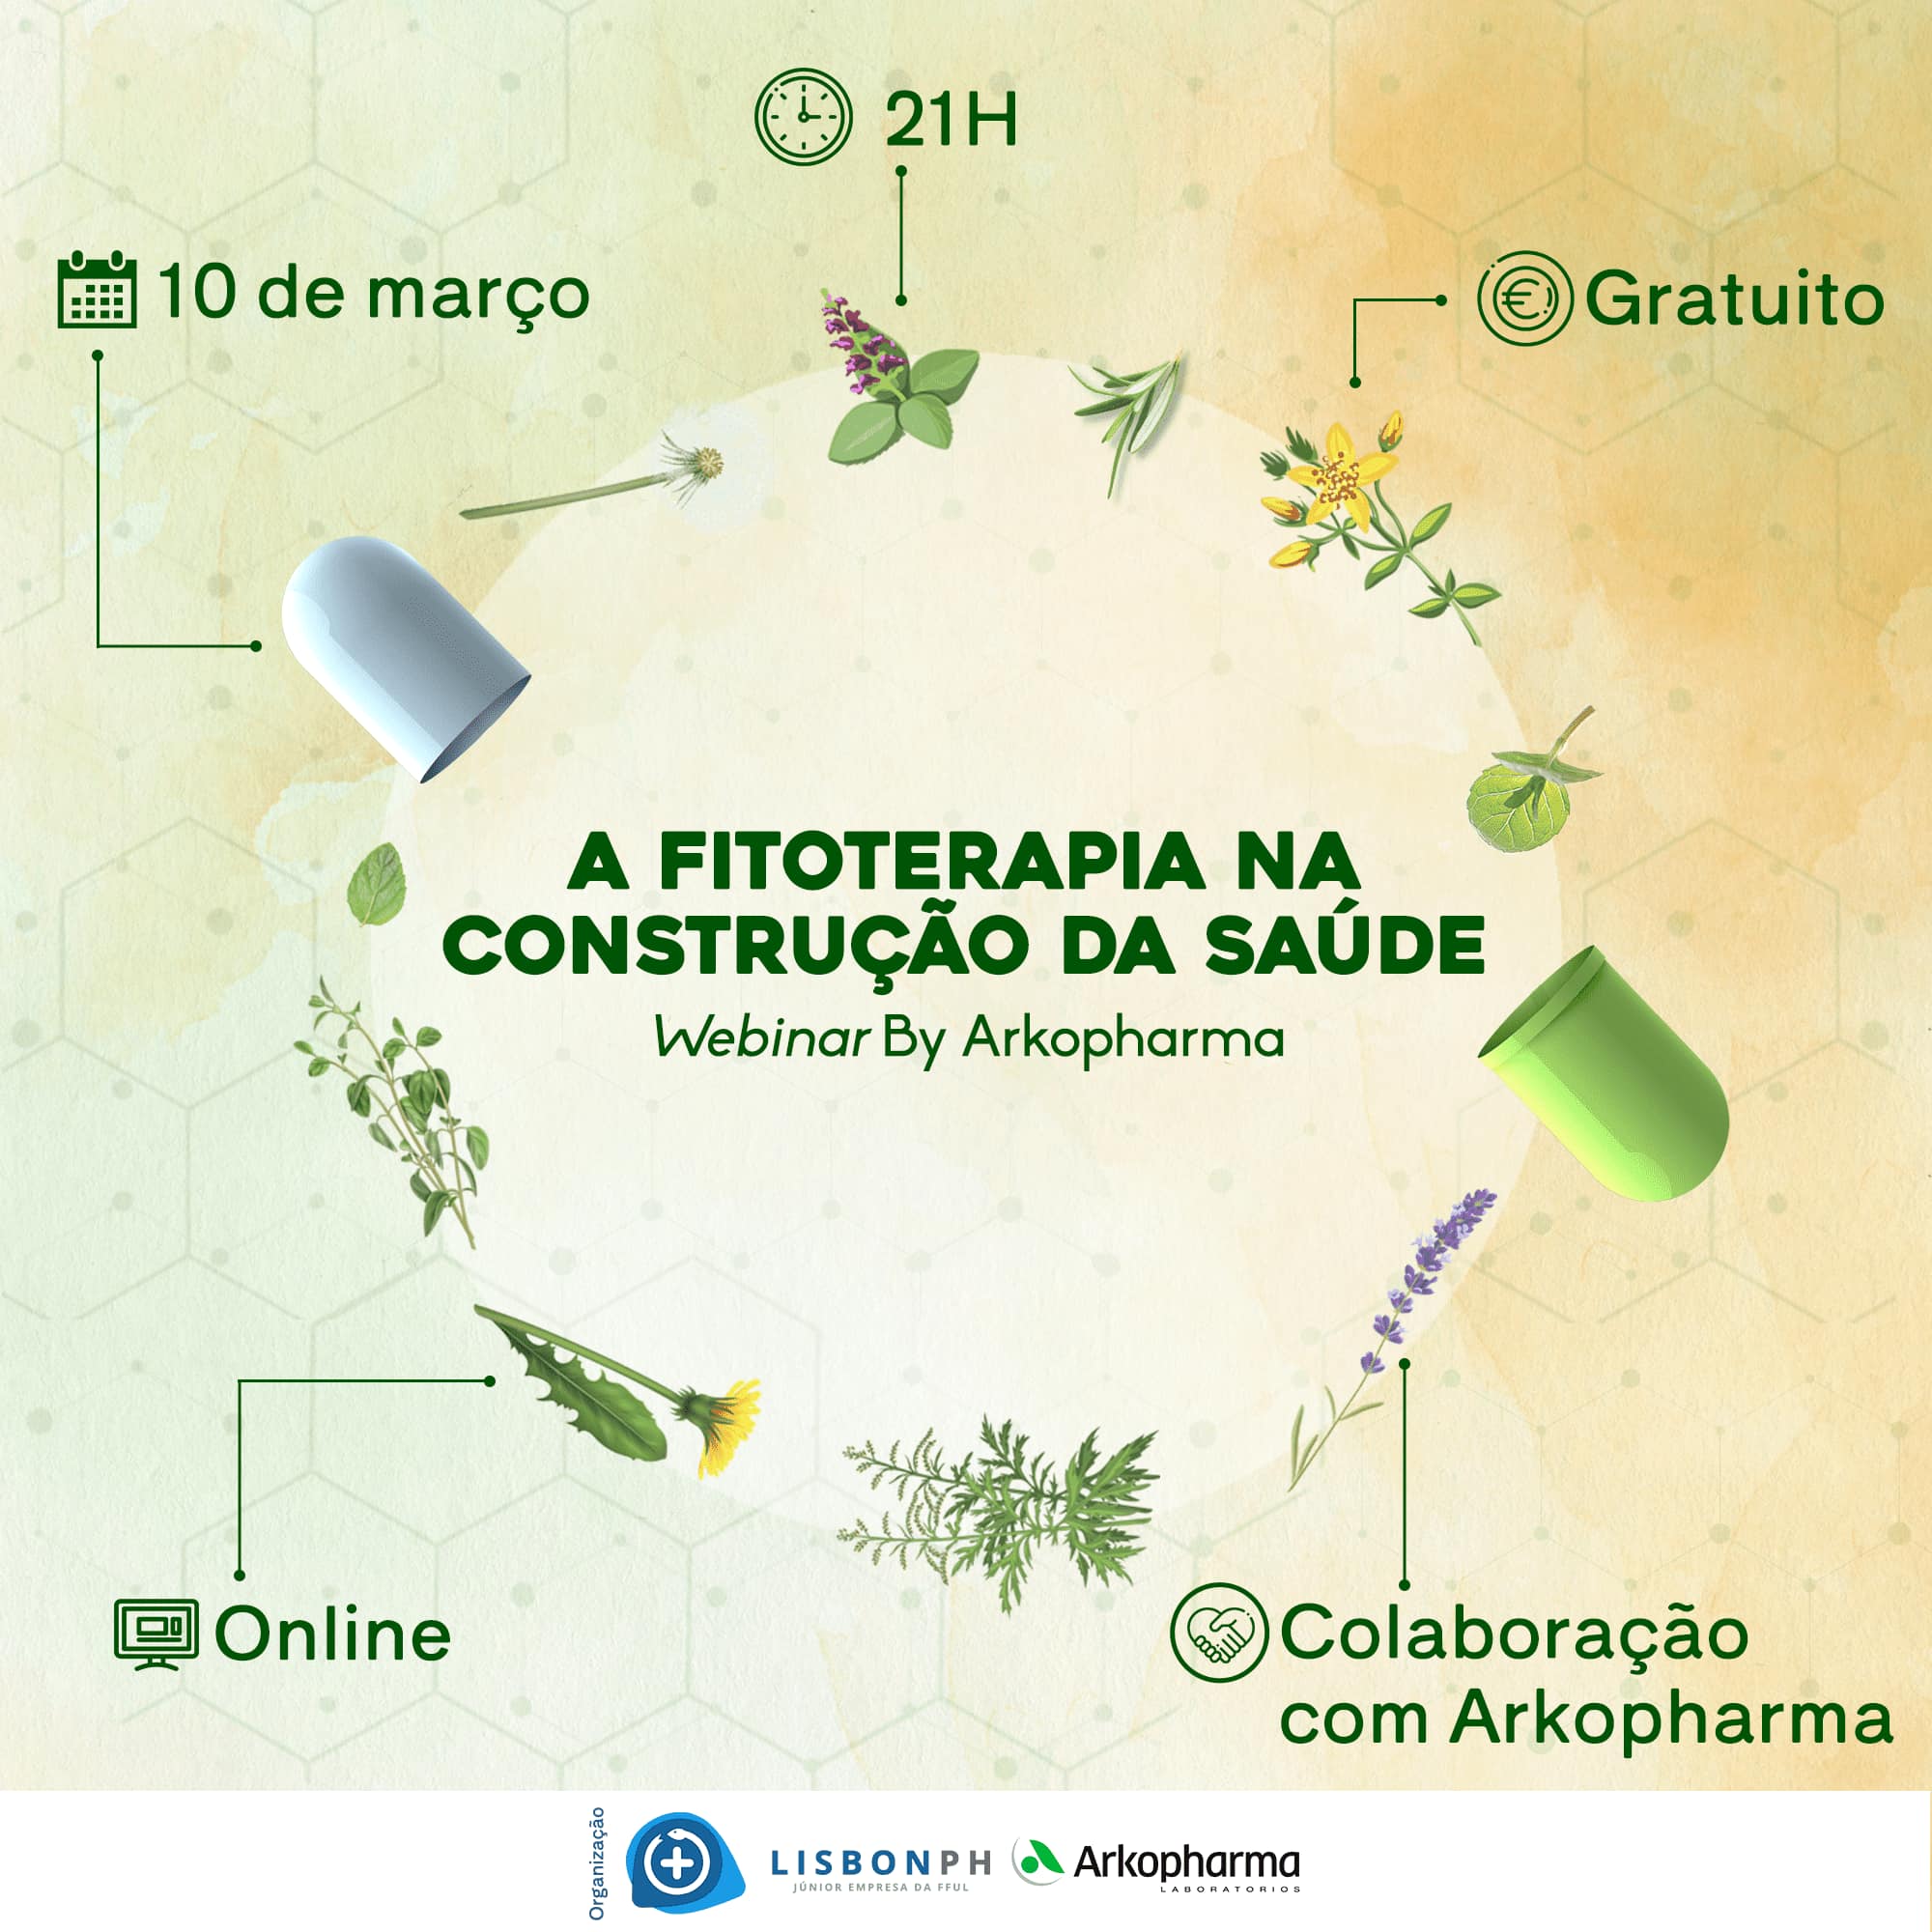 A Fitoterapia na Construção da Saúde. 
Fonte: Facebook LisbonPH